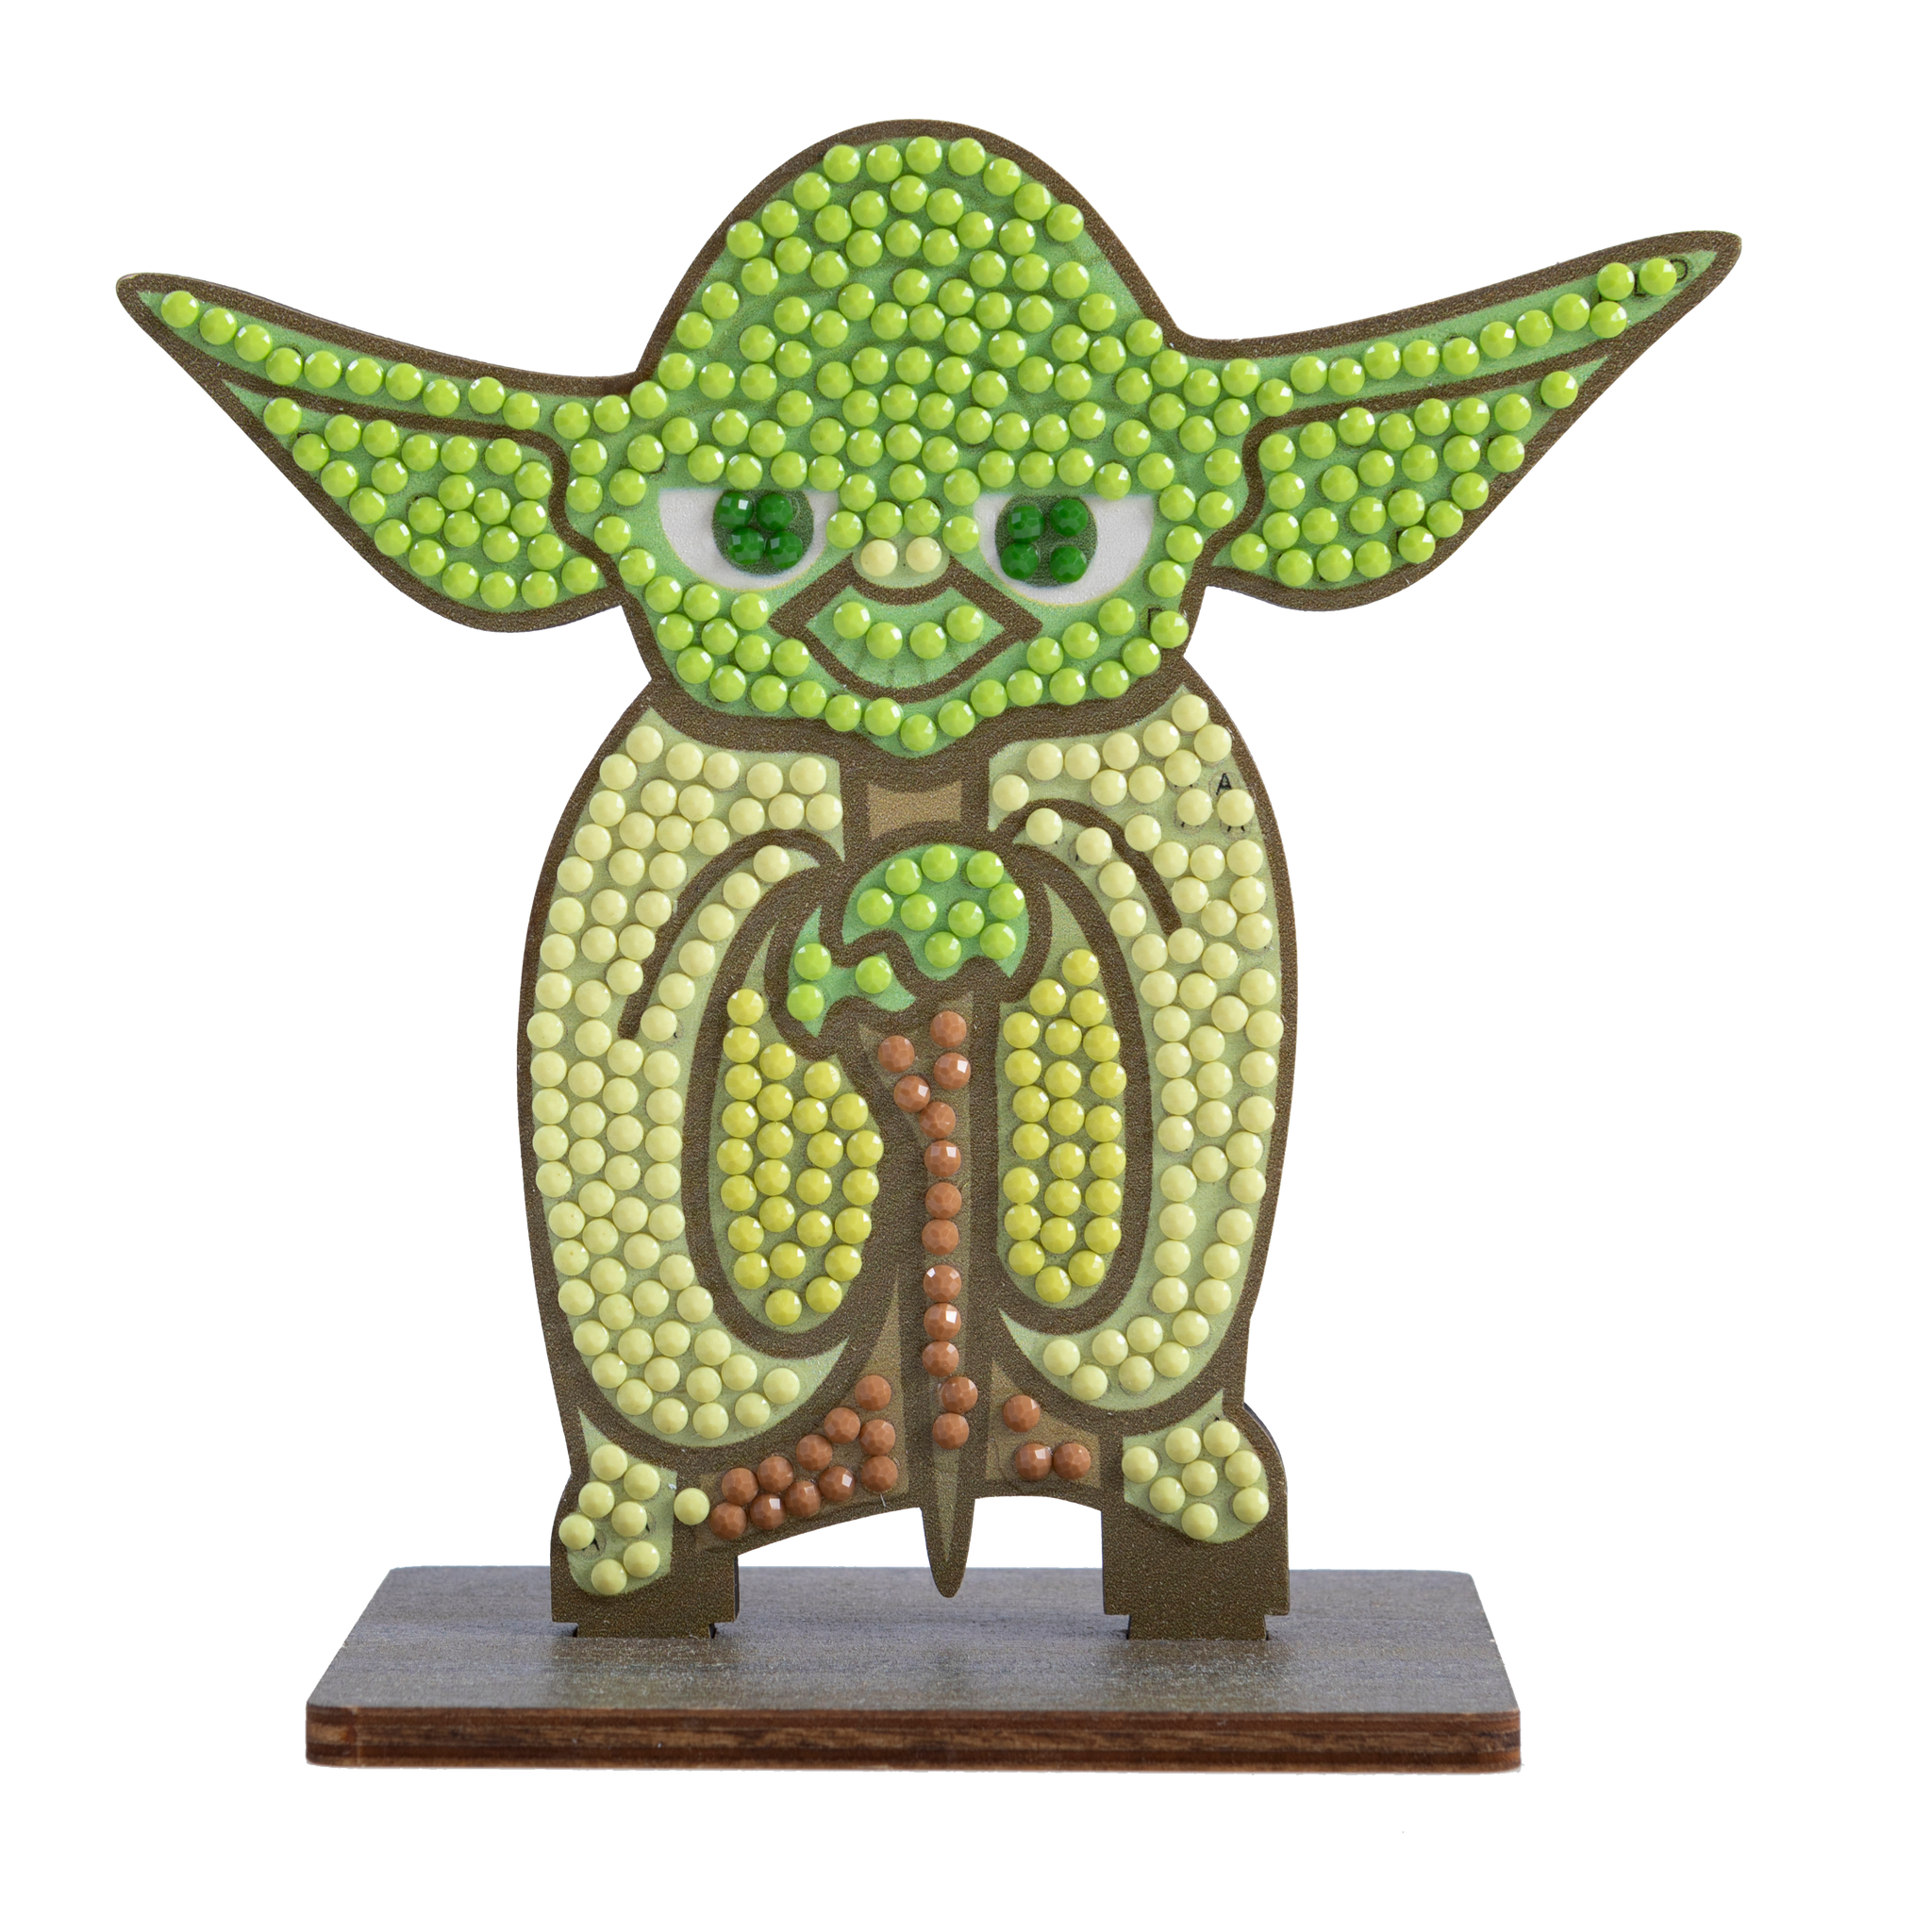 Craft Buddy-Crystal Art Buddies-Crystal Art Figurines - Yoda